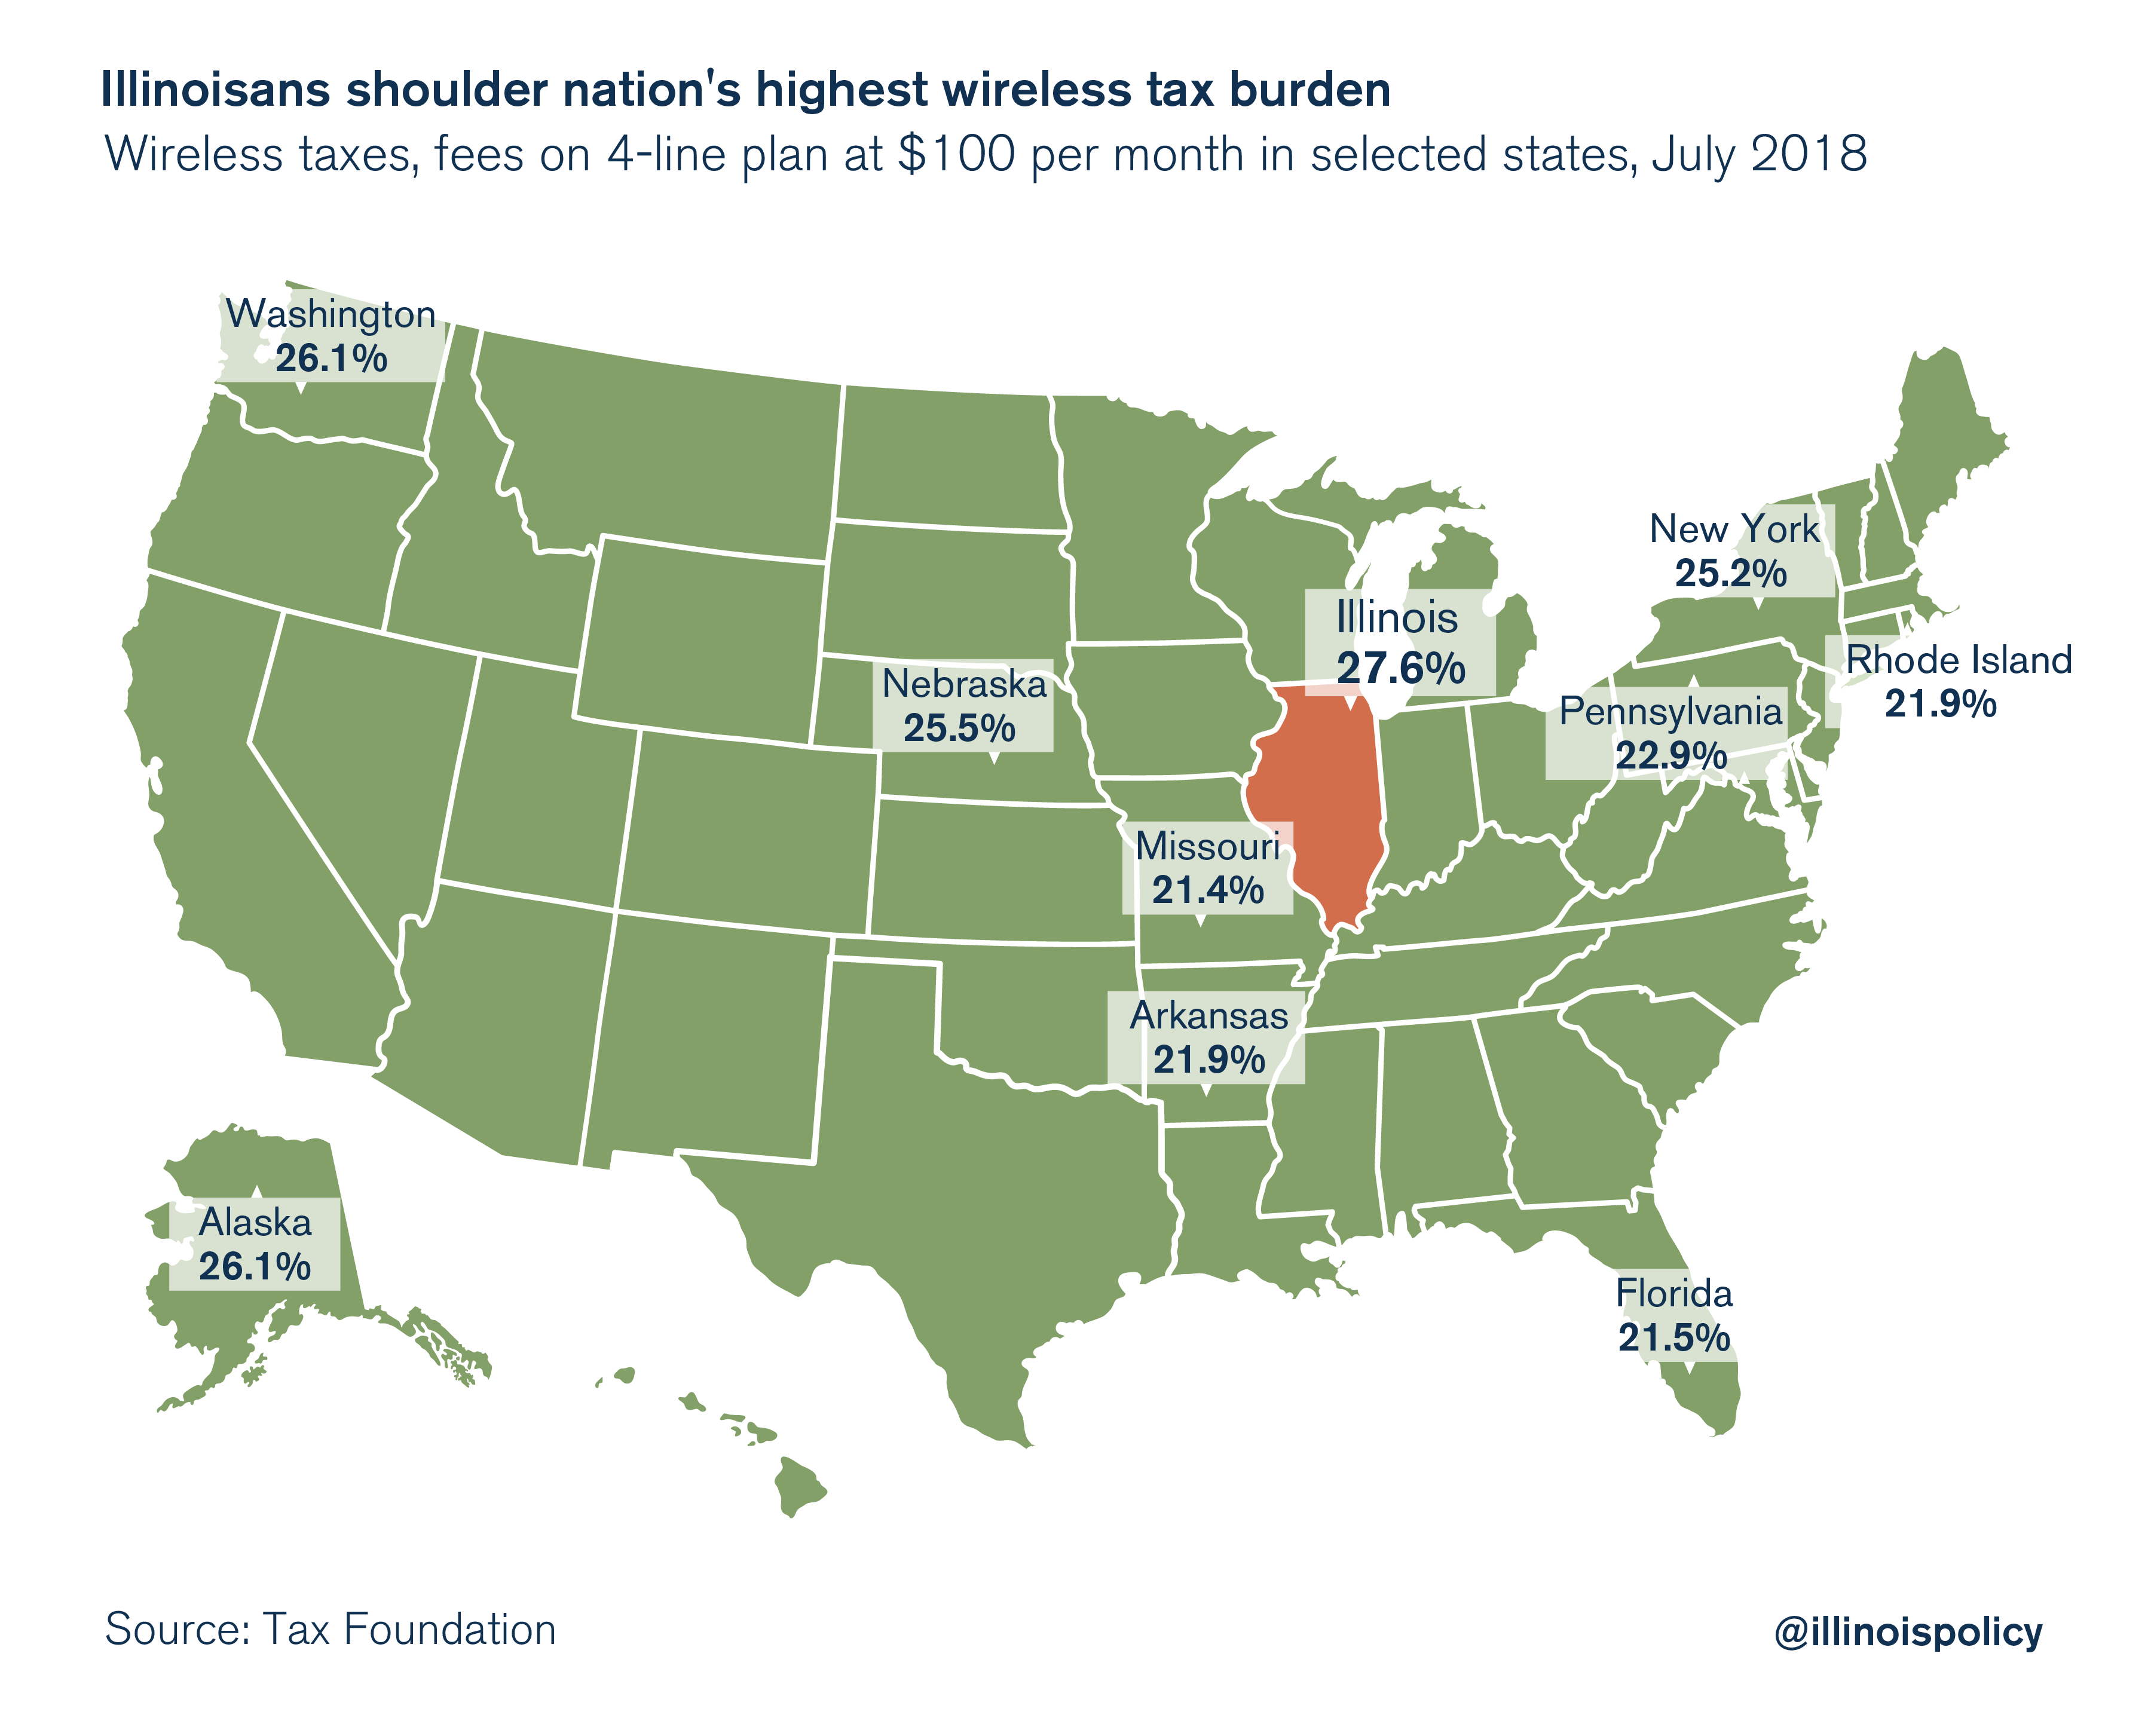 Illinoisans shoulder nation's highest wireless tax burden